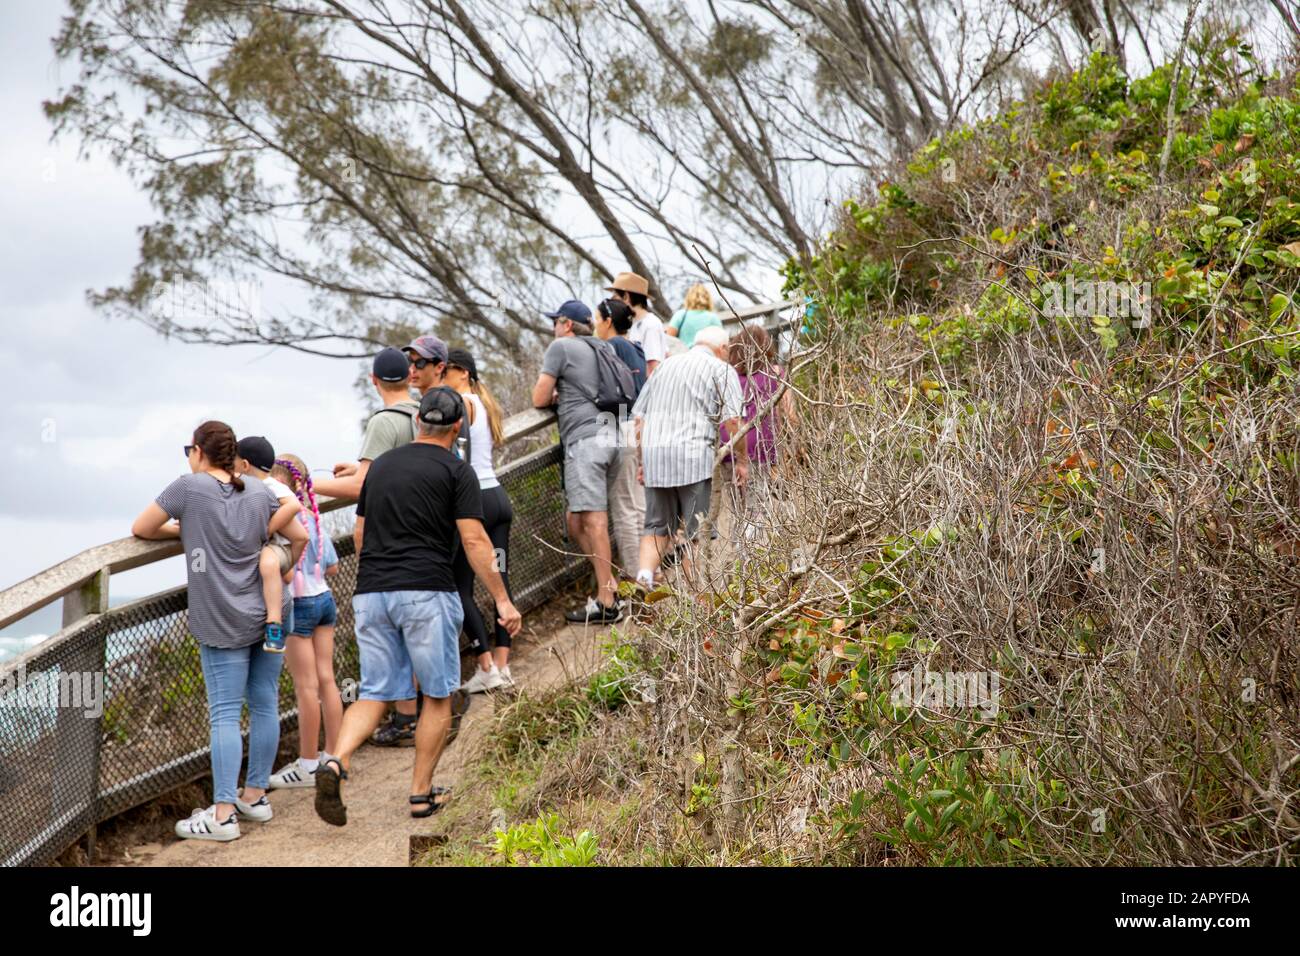 Byron Bay, Cape Byron ruta costera es popular entre los turistas y visitantes de la ciudad, Australia Foto de stock